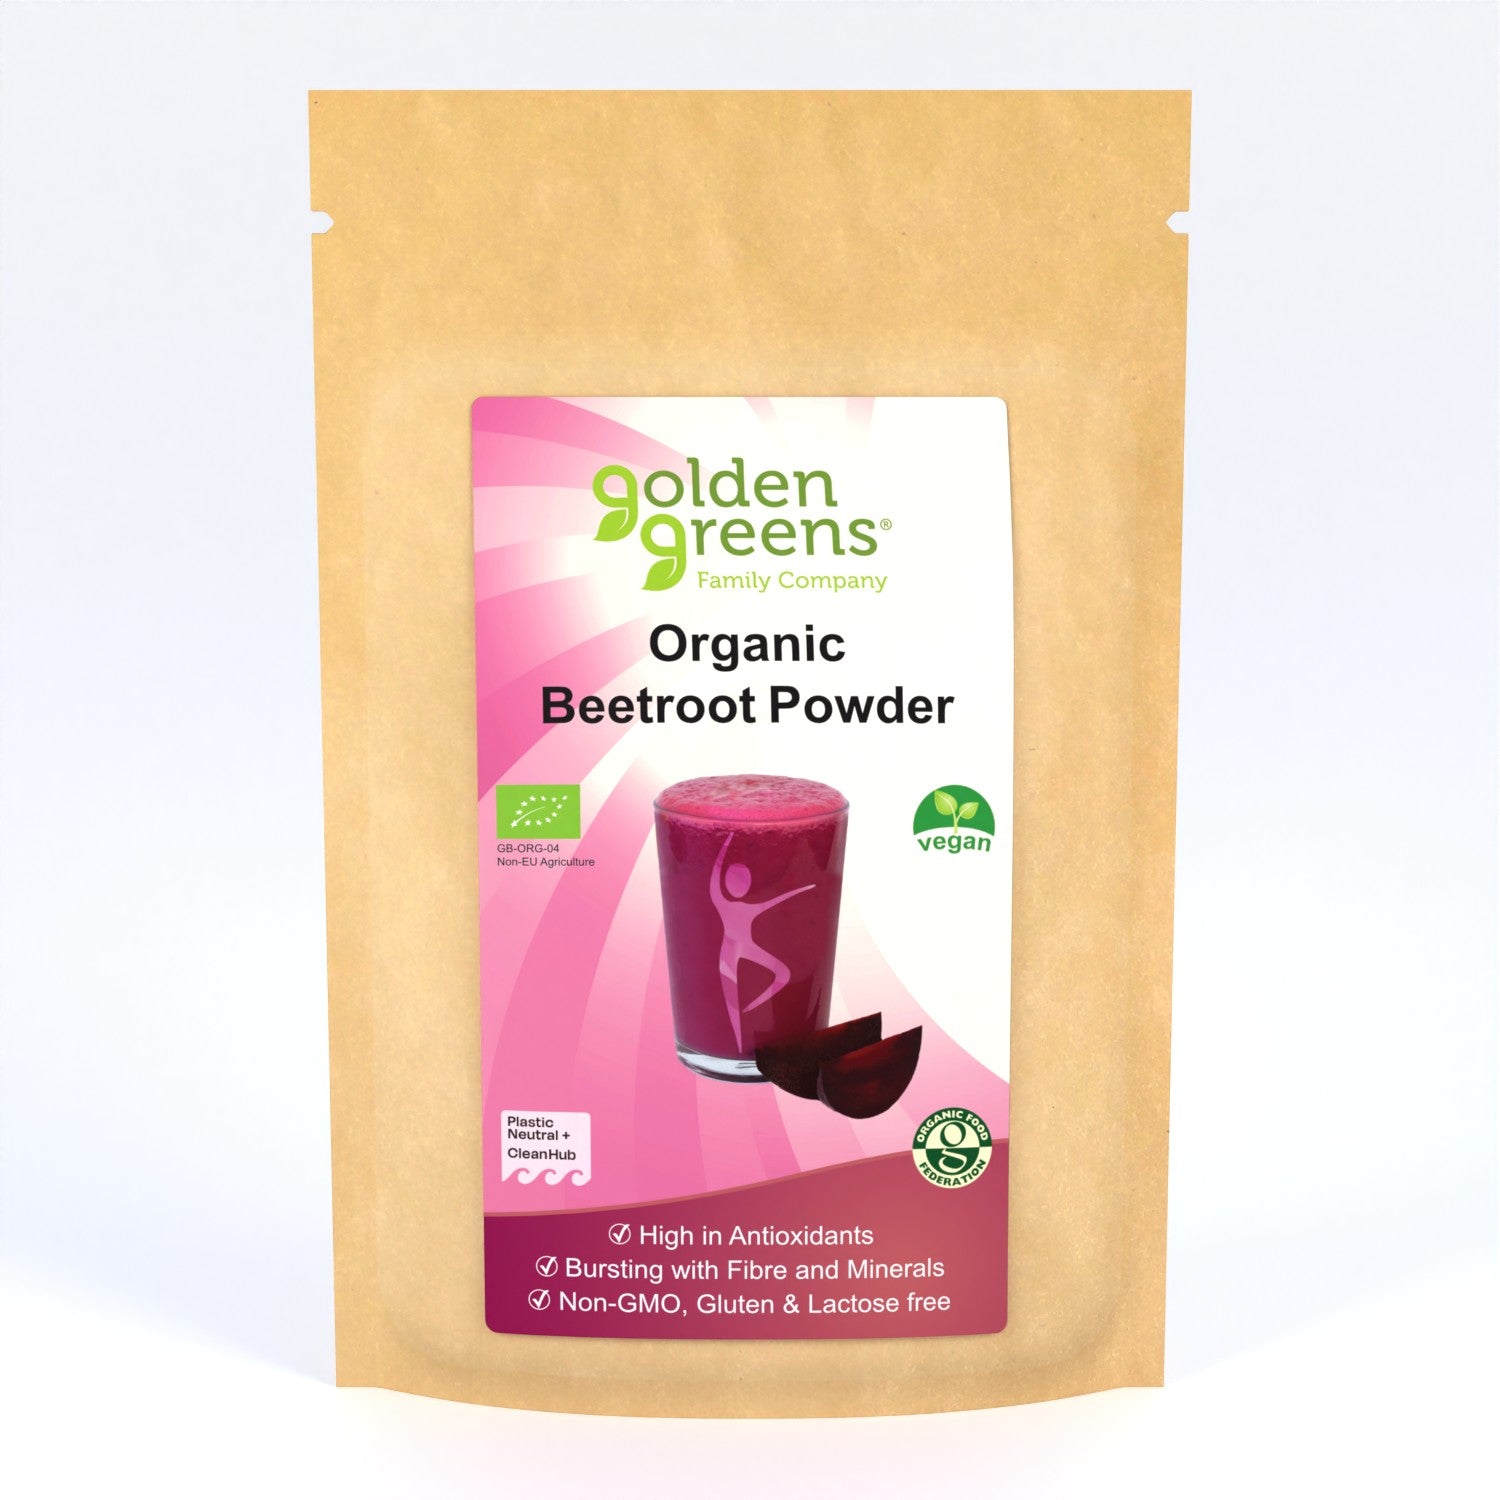 View Organic Beetroot Powder information